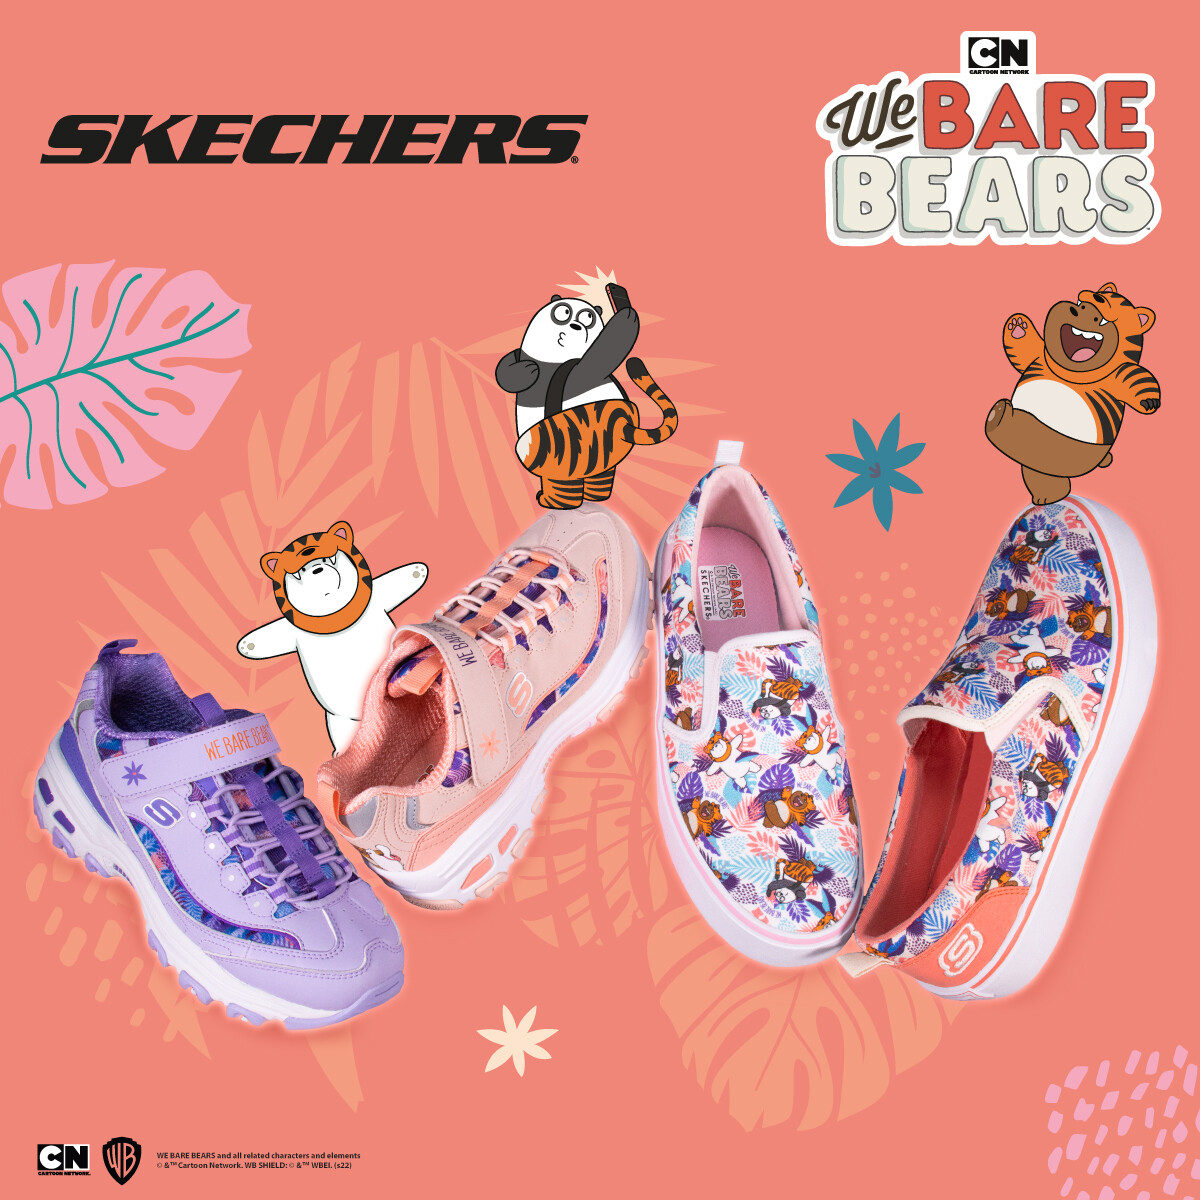 สเก็ตเชอร์ส ส่งสามหมีจอมป่วม We Bare Bears มาคำรามส่งความสุขต้อนรับปีเสือ ในคอลเลคชั่น SKECHERS X We Bare Bears จัดเต็มทั้งเสื้อผ้าและรองเท้าสุดคิวท์